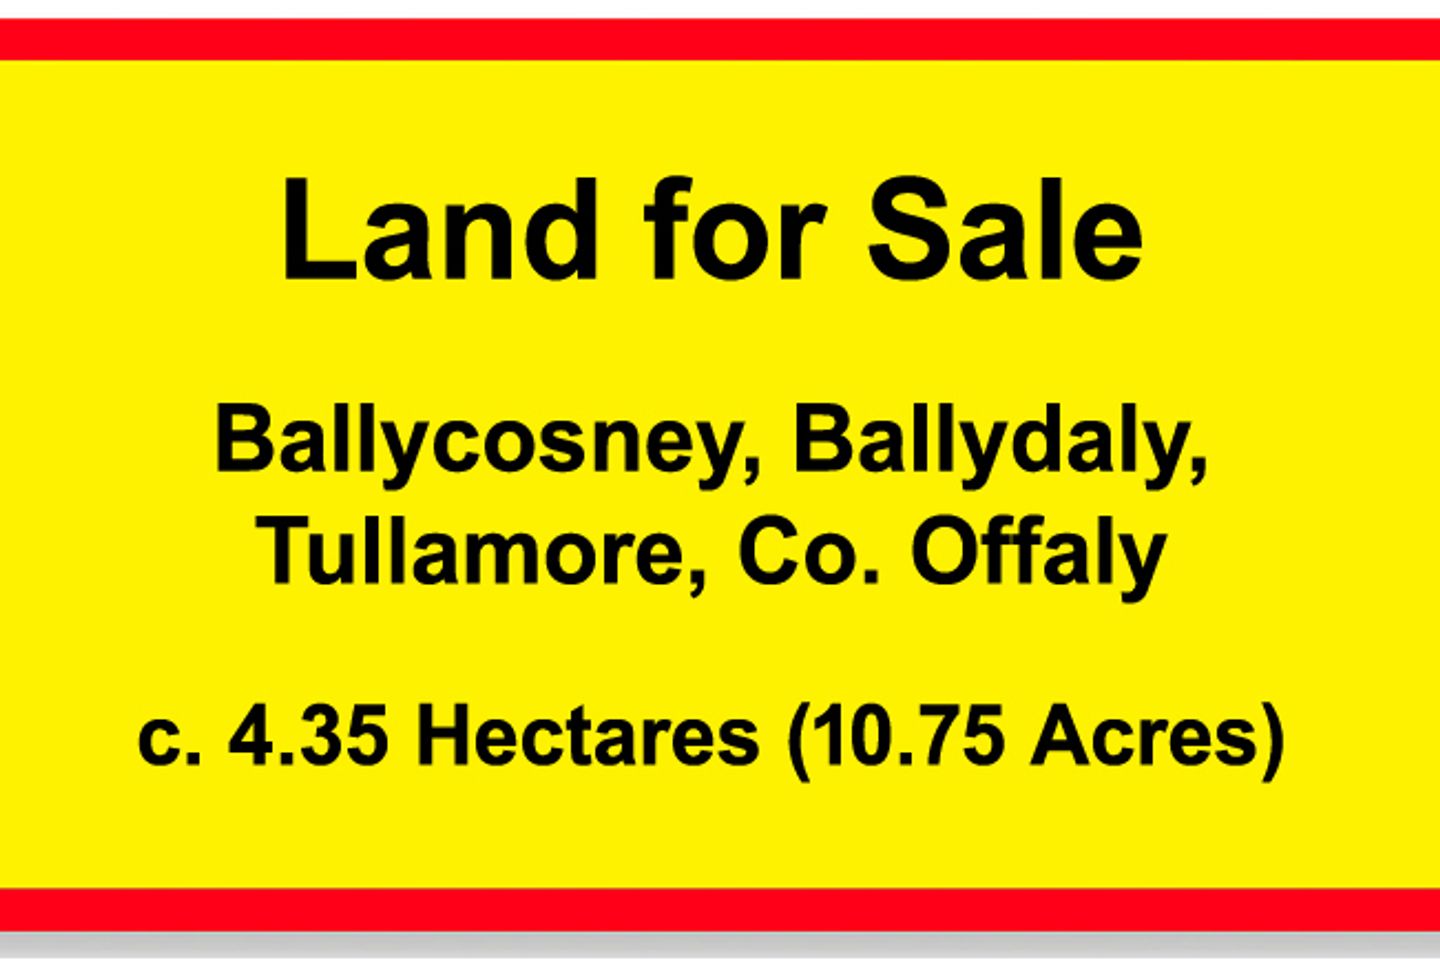 Ballycosney, Ballydaly, Tullamore, Co. Offaly